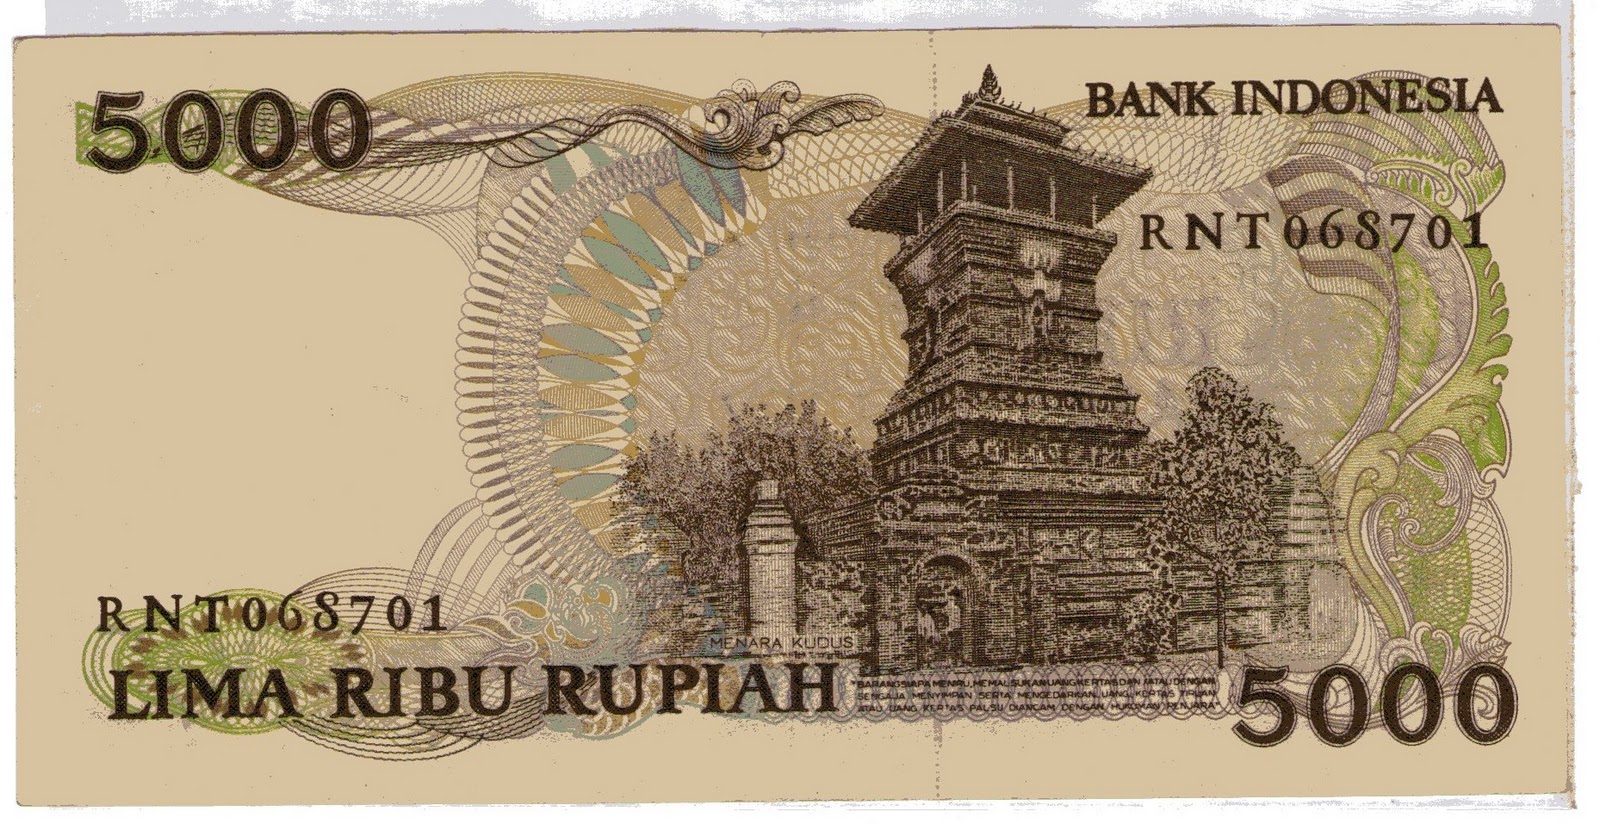 KOLEKTOR UANG JADUL: LIMA RIBU RUPIAH ( 5000 ) TAHUN 1986